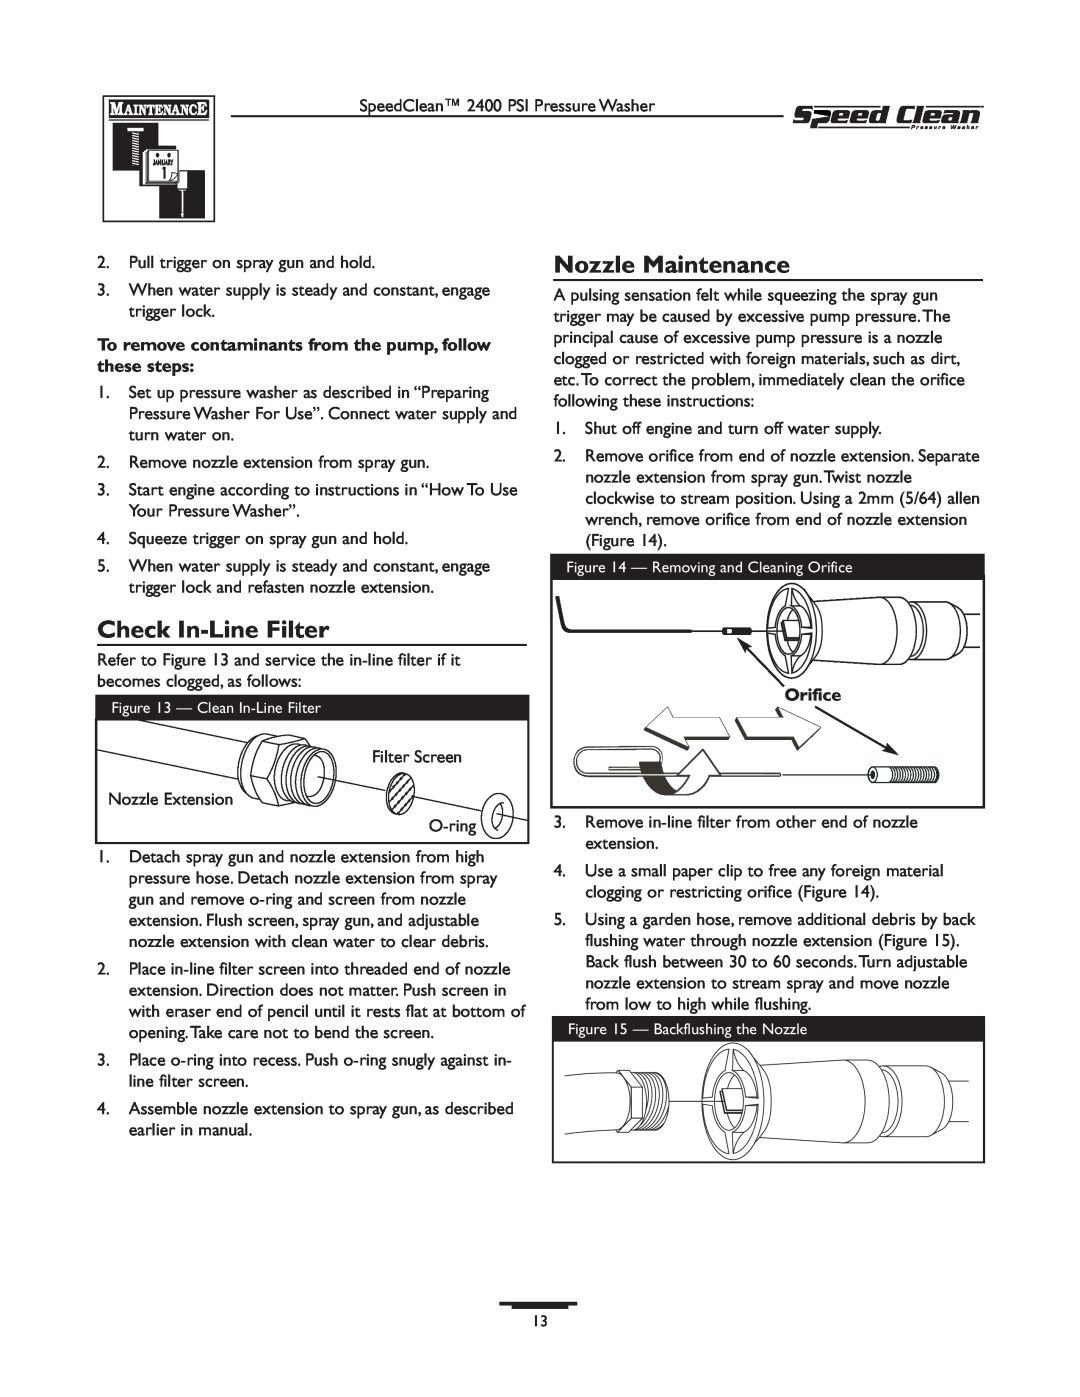 Briggs & Stratton 020227-0 owner manual Nozzle Maintenance, Check In-Line Filter, Orifice 